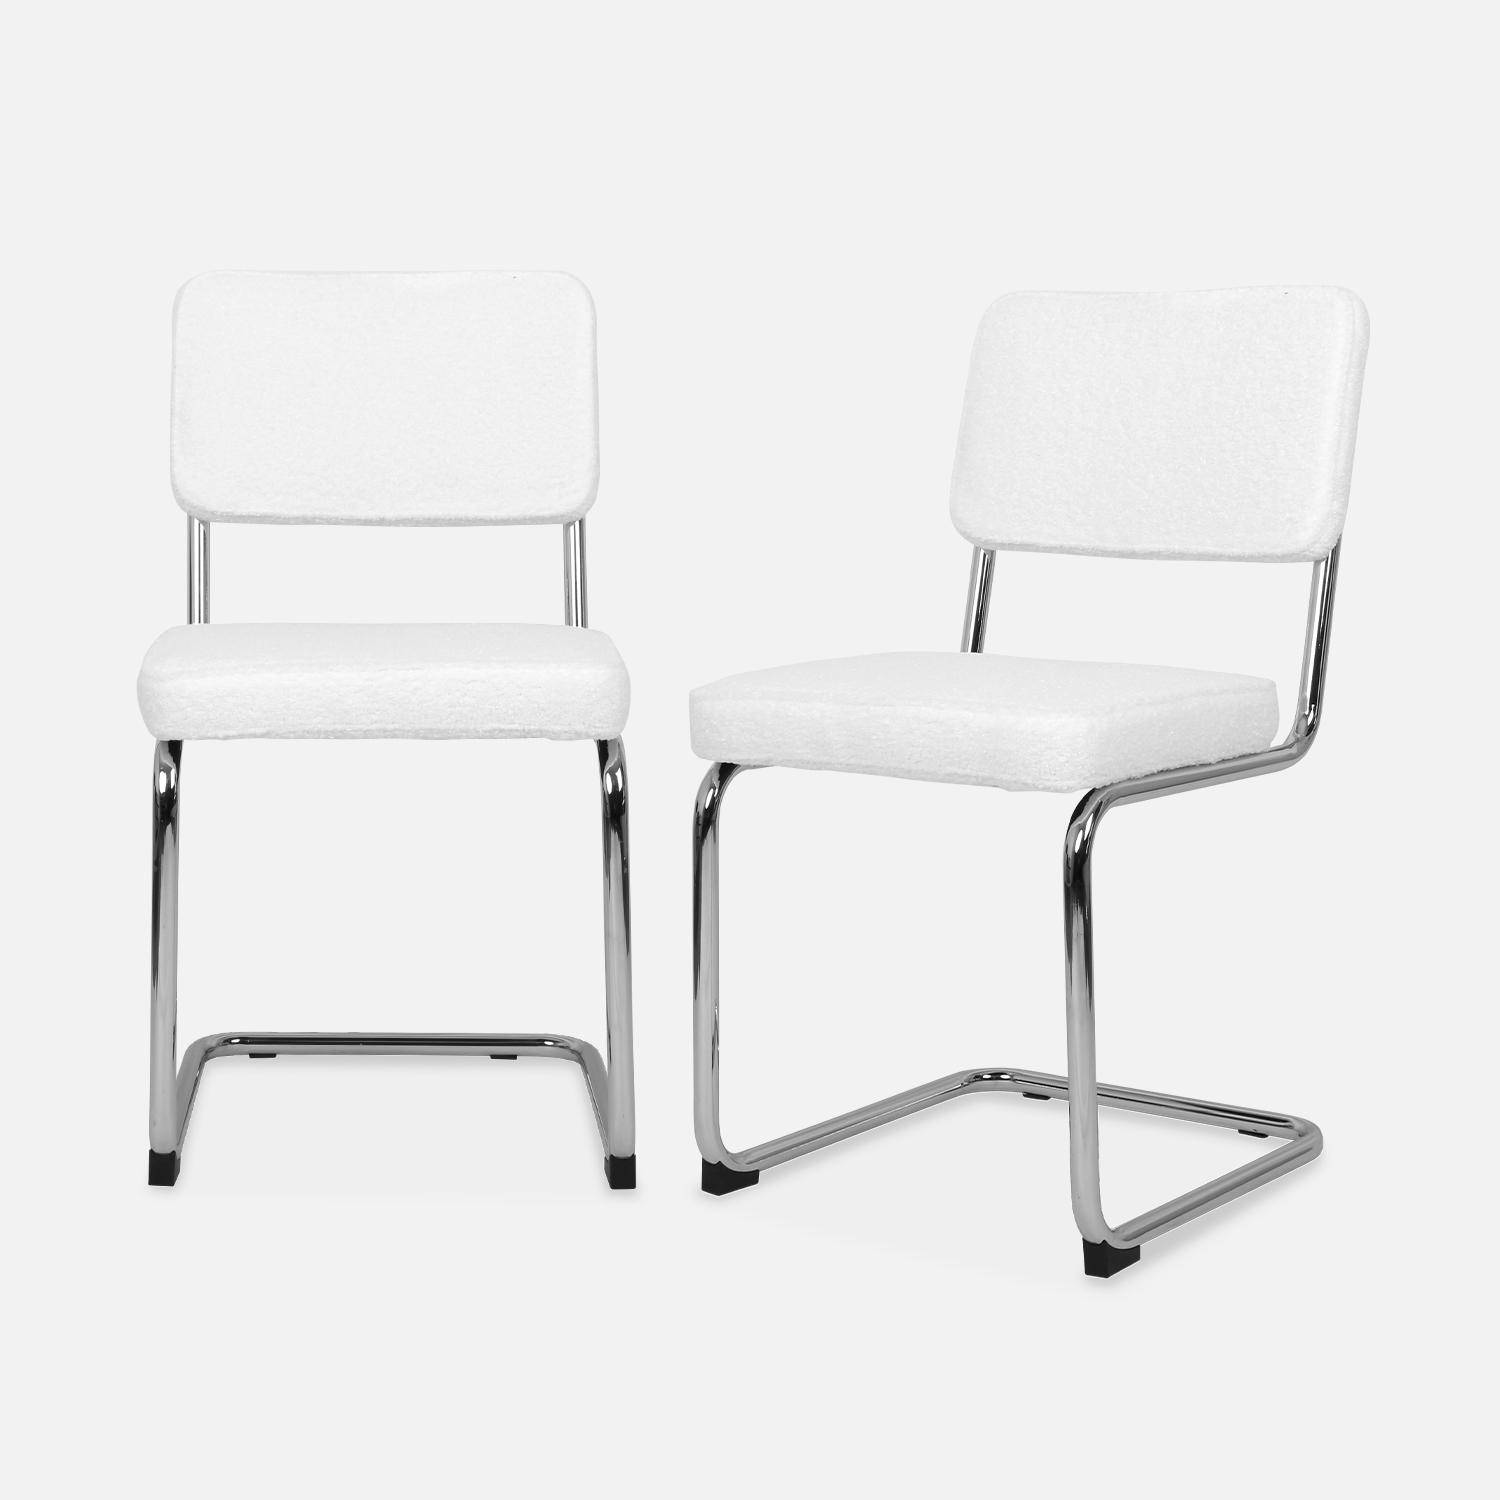 2 sillas voladizas - Maja - con rizos blancos, 46 x 54,5 x 84,5cm  ,sweeek,Photo3